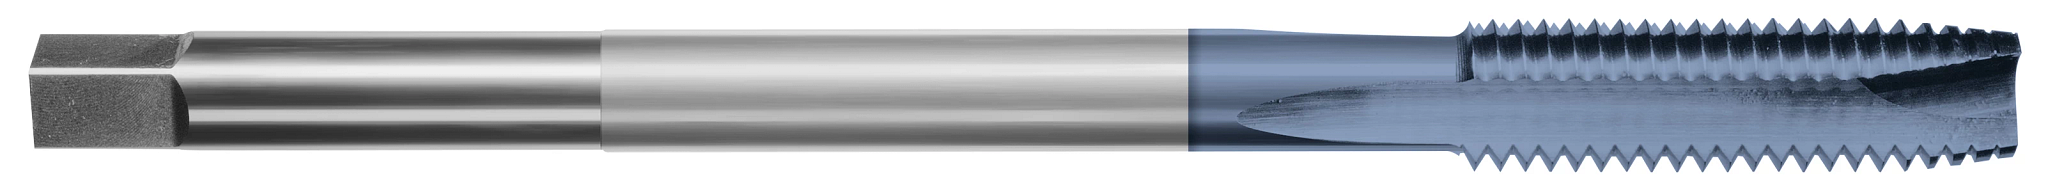 High Speed Steel-Extension Taps-Spiral Point Plug